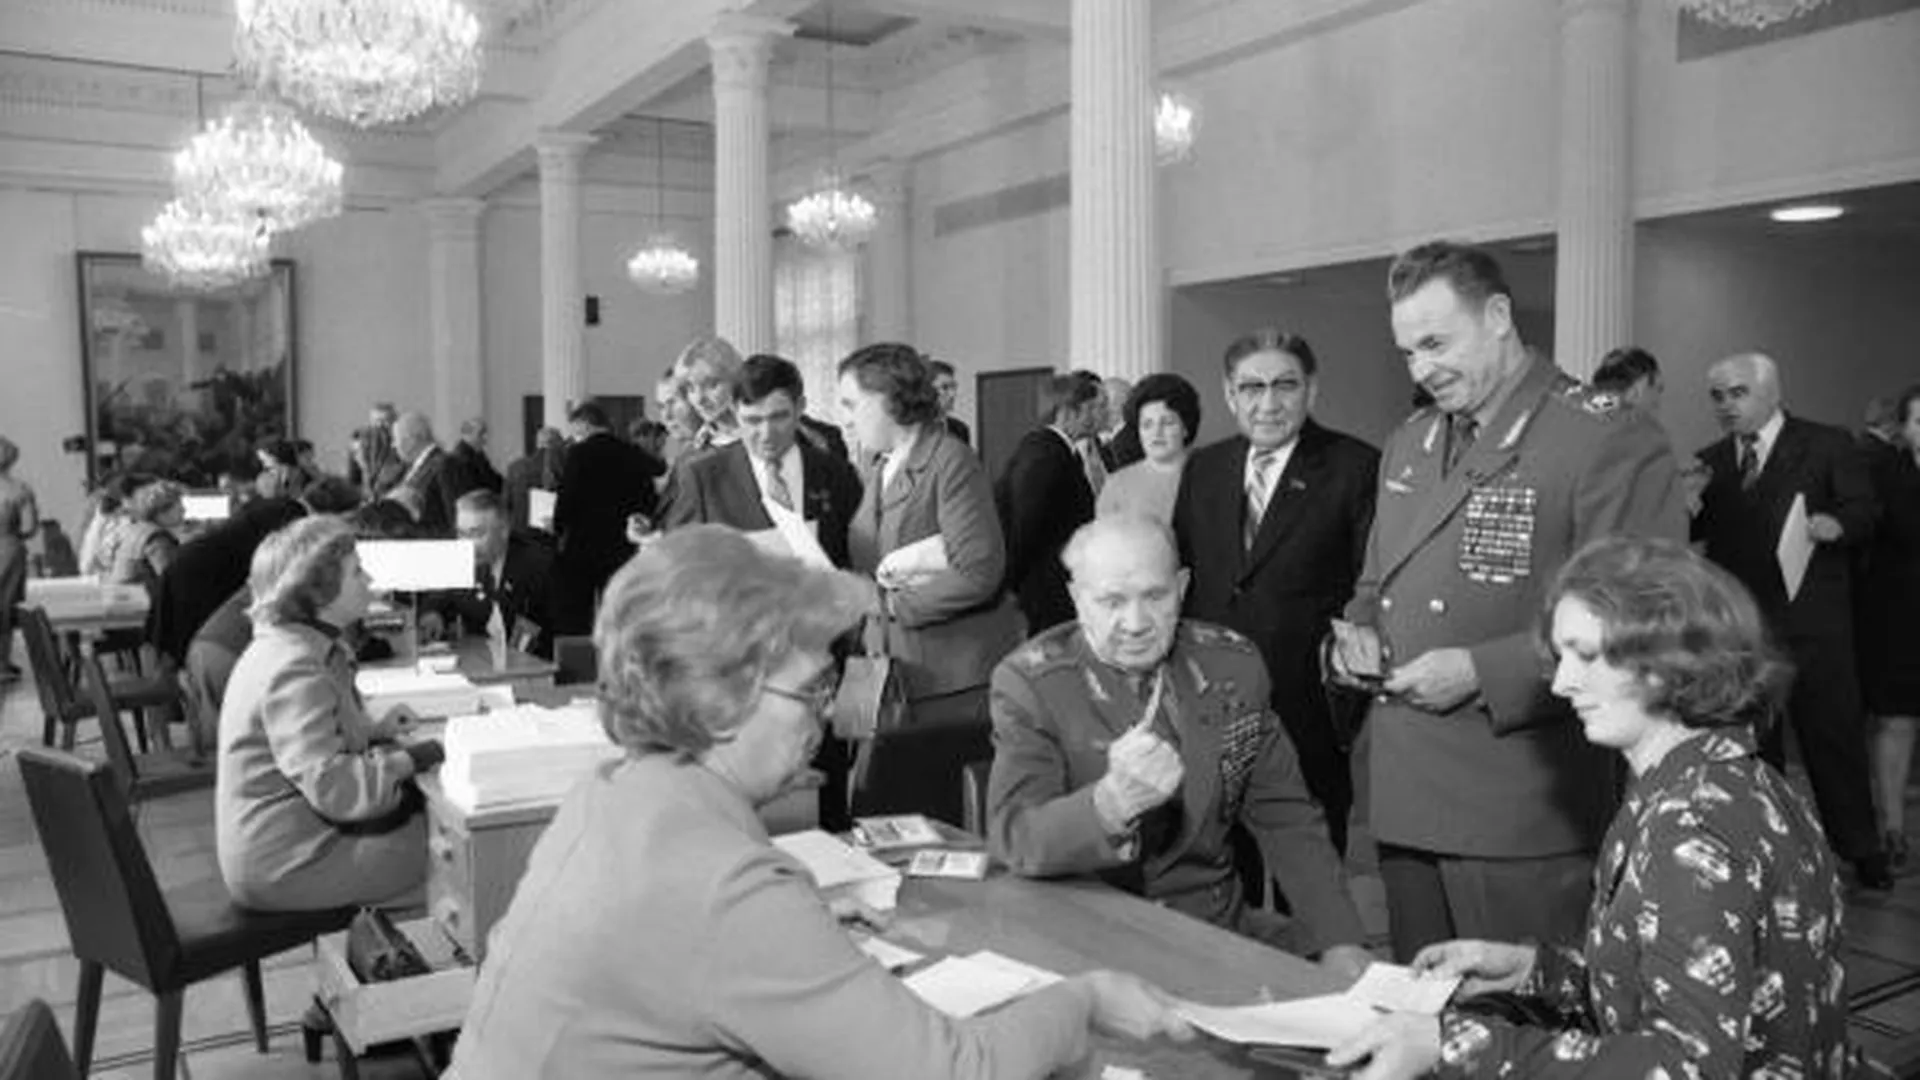 Внеочередная, седьмая, сессия Верховного Совета СССР девятого созыва (4-7 октября 1977 года), посвященная принятию новой Конституции СССР («брежневской»), пришедшей на смену «сталинской» Конституции 1936 года